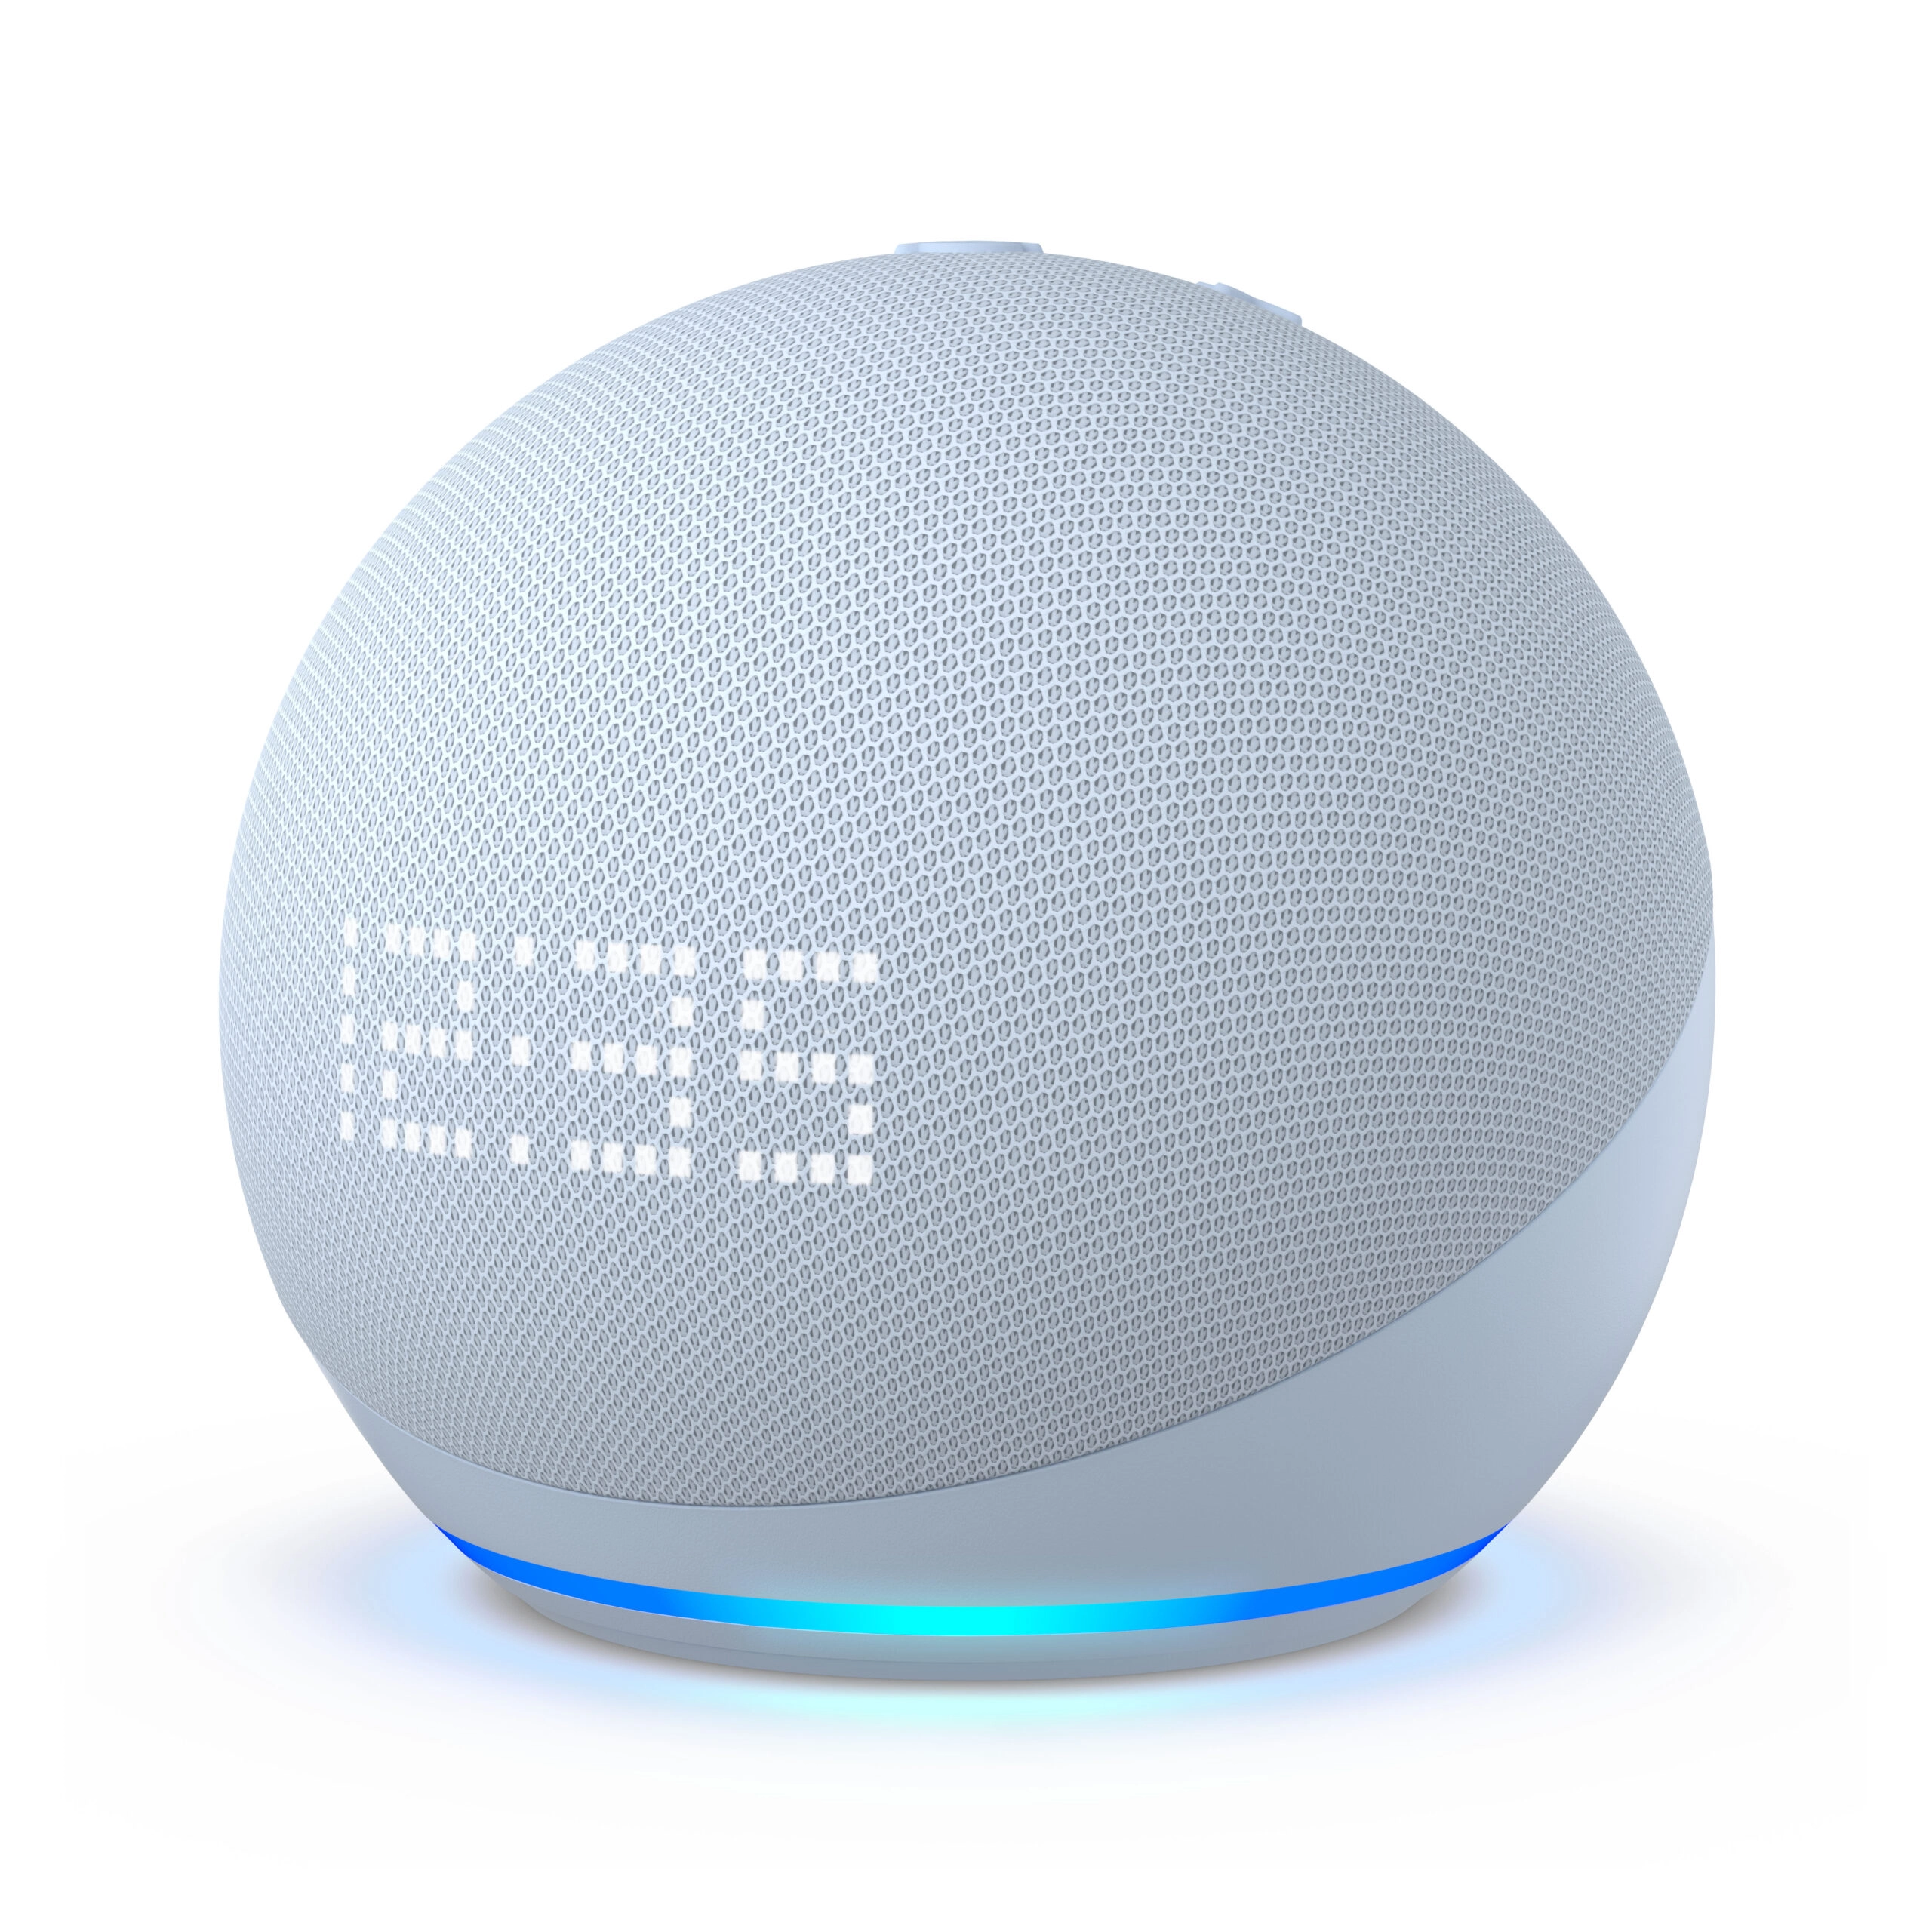 Altavoz inteligente Echo Dot con reloj, de Amazon.